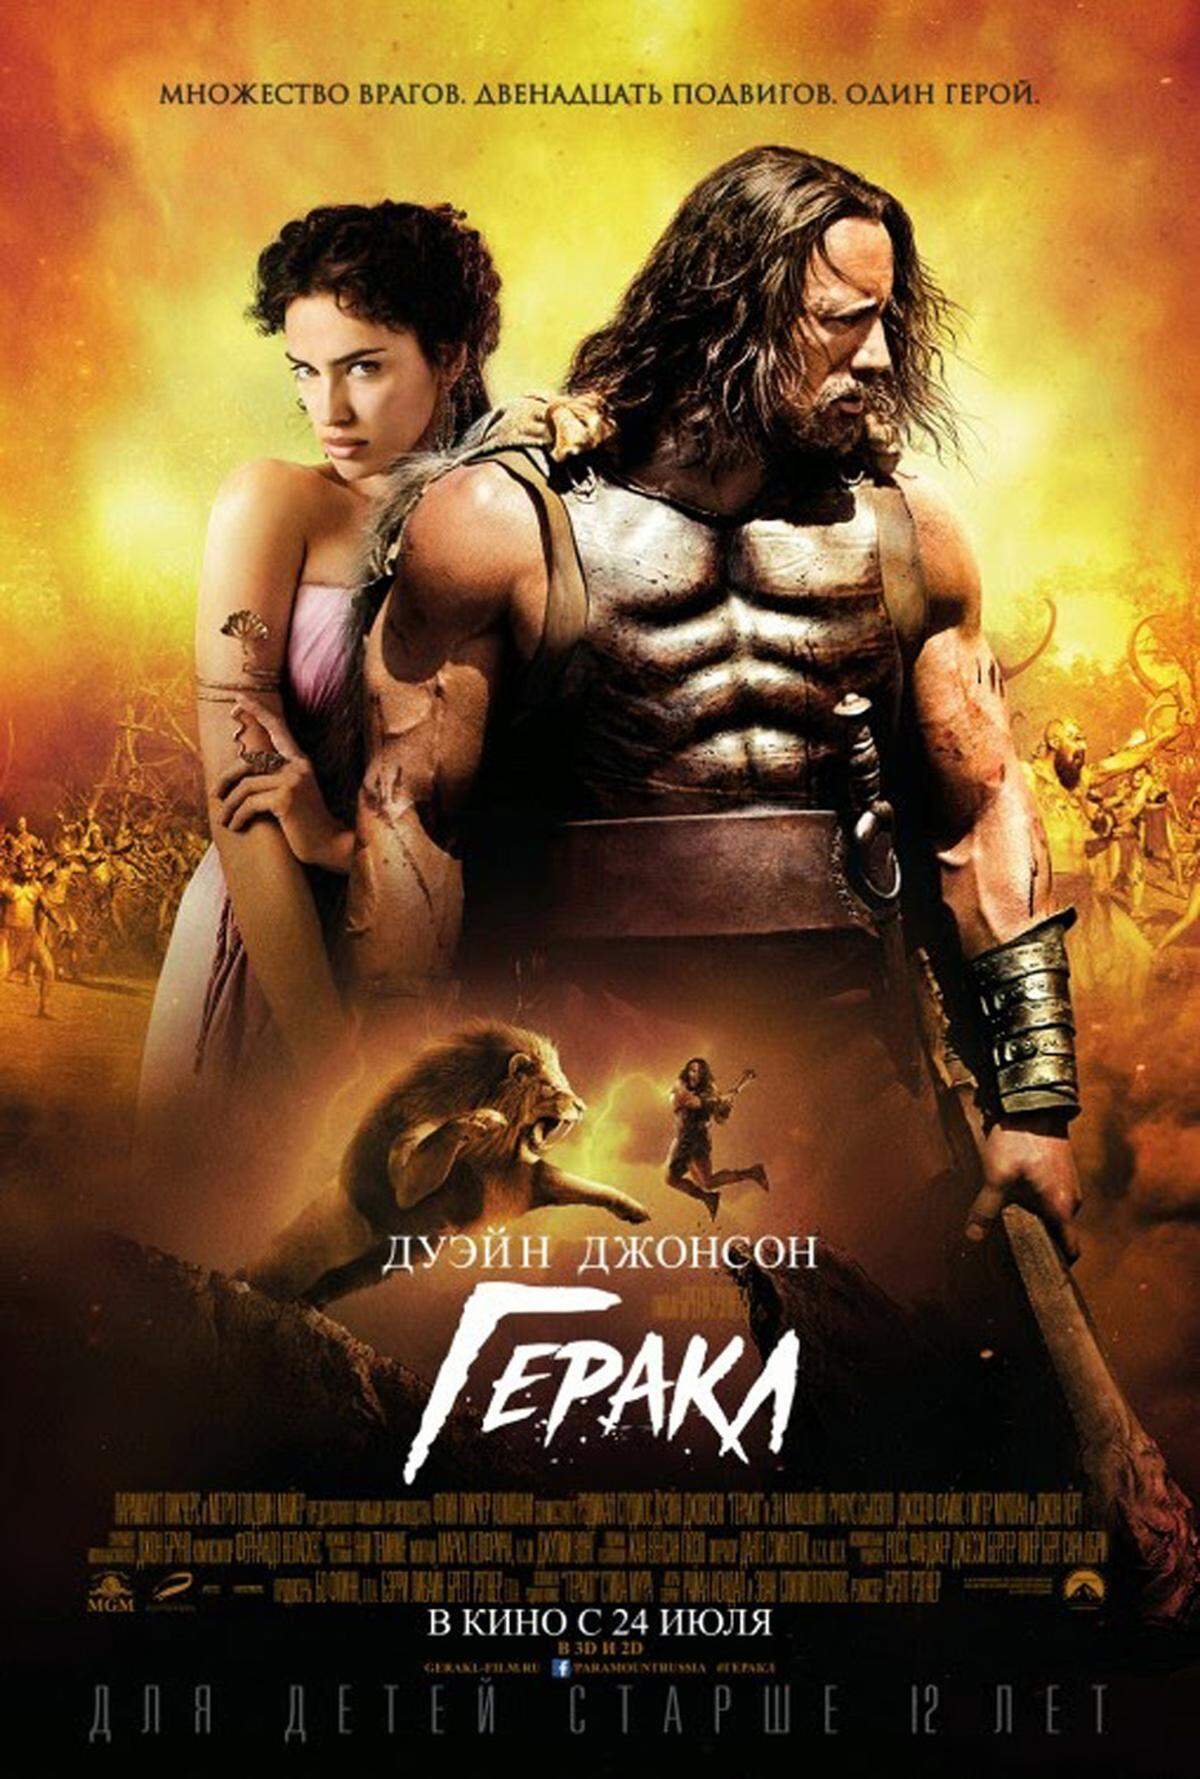 Schön wie immer zeigt sich Irina Shayk auf dem Filmposter zu "Hercules". Kein Wunder, schließlich ist die Neo-Schauspielerin eigentlich Model.